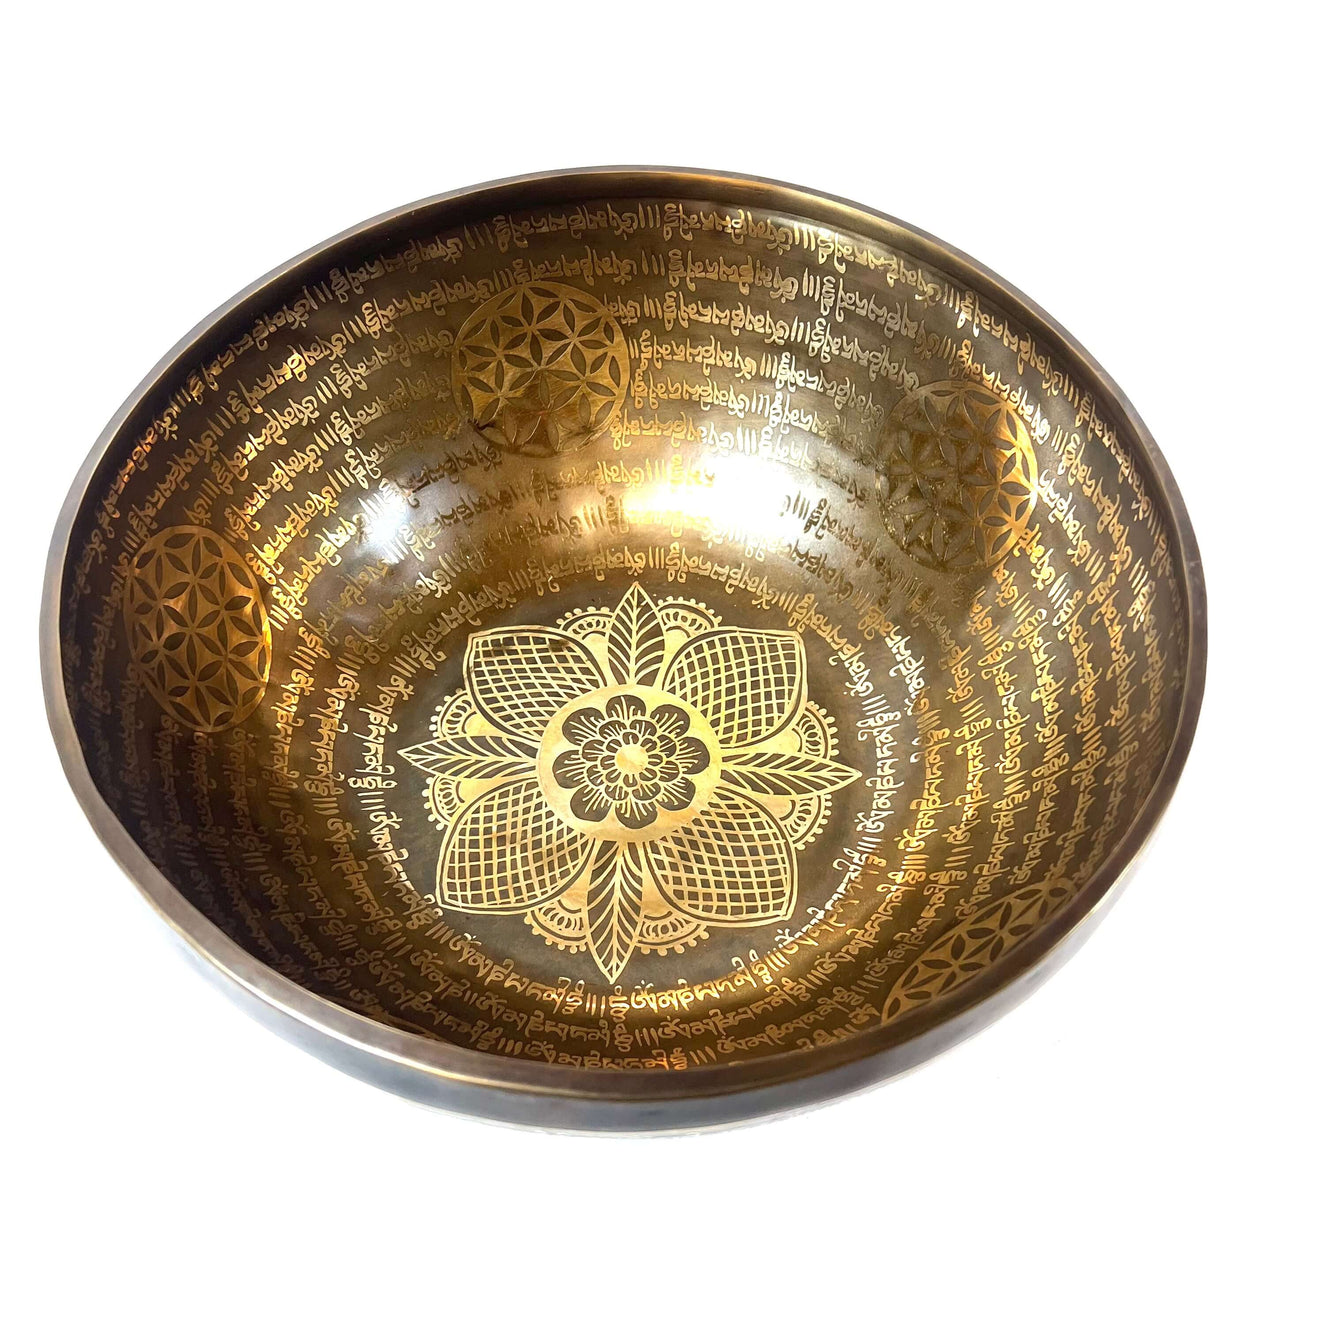 Tibetan Singing Bowl Inside